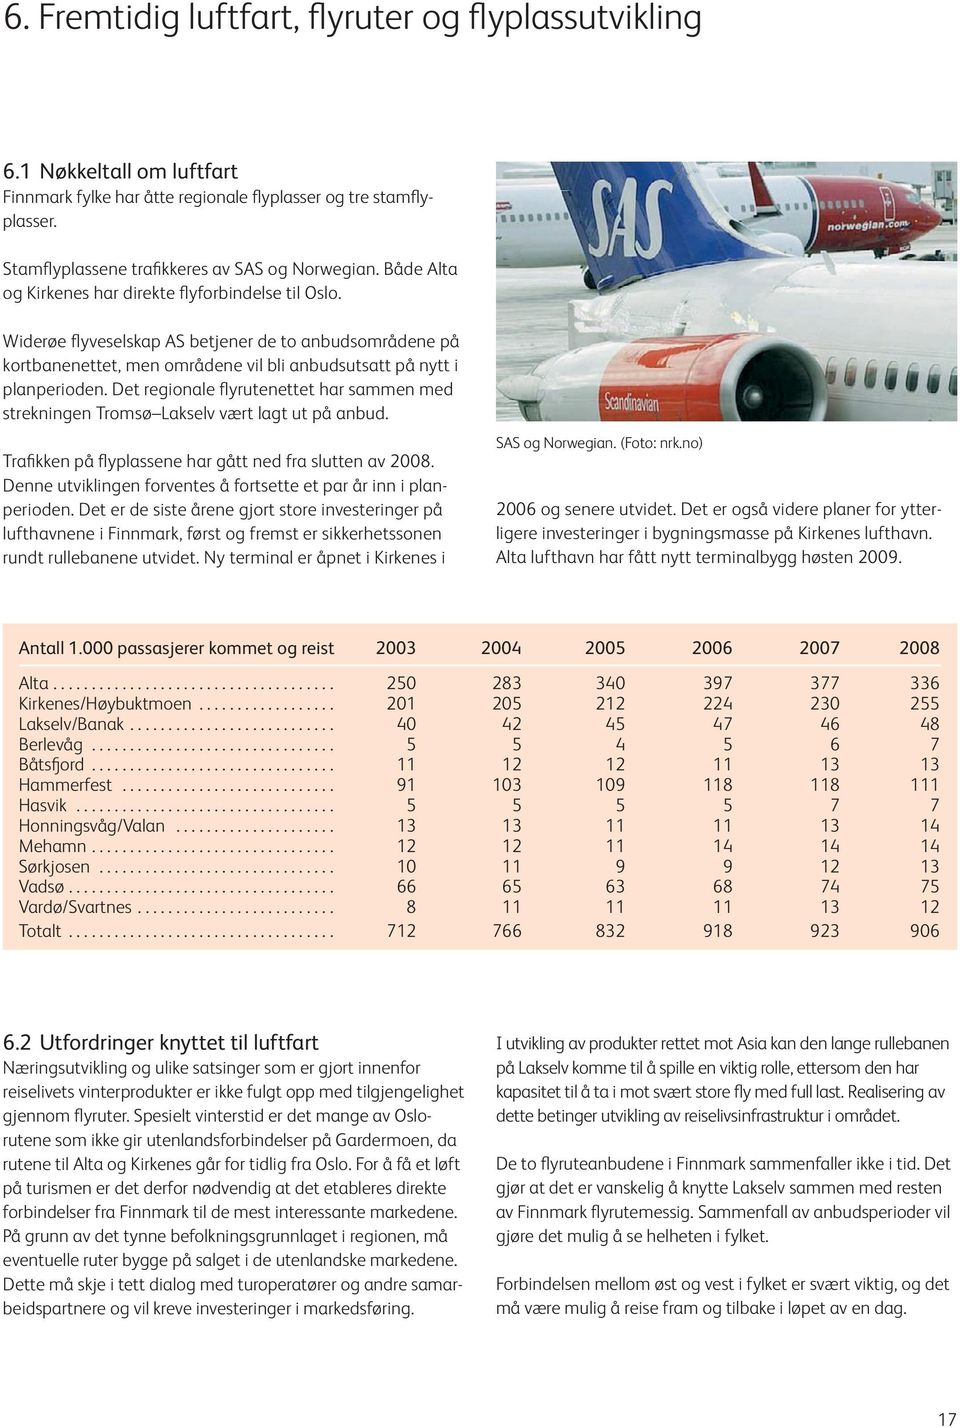 Det regionale flyrutenettet har sammen med strekningen Tromsø Lakselv vært lagt ut på anbud. Trafikken på flyplassene har gått ned fra slutten av 2008.